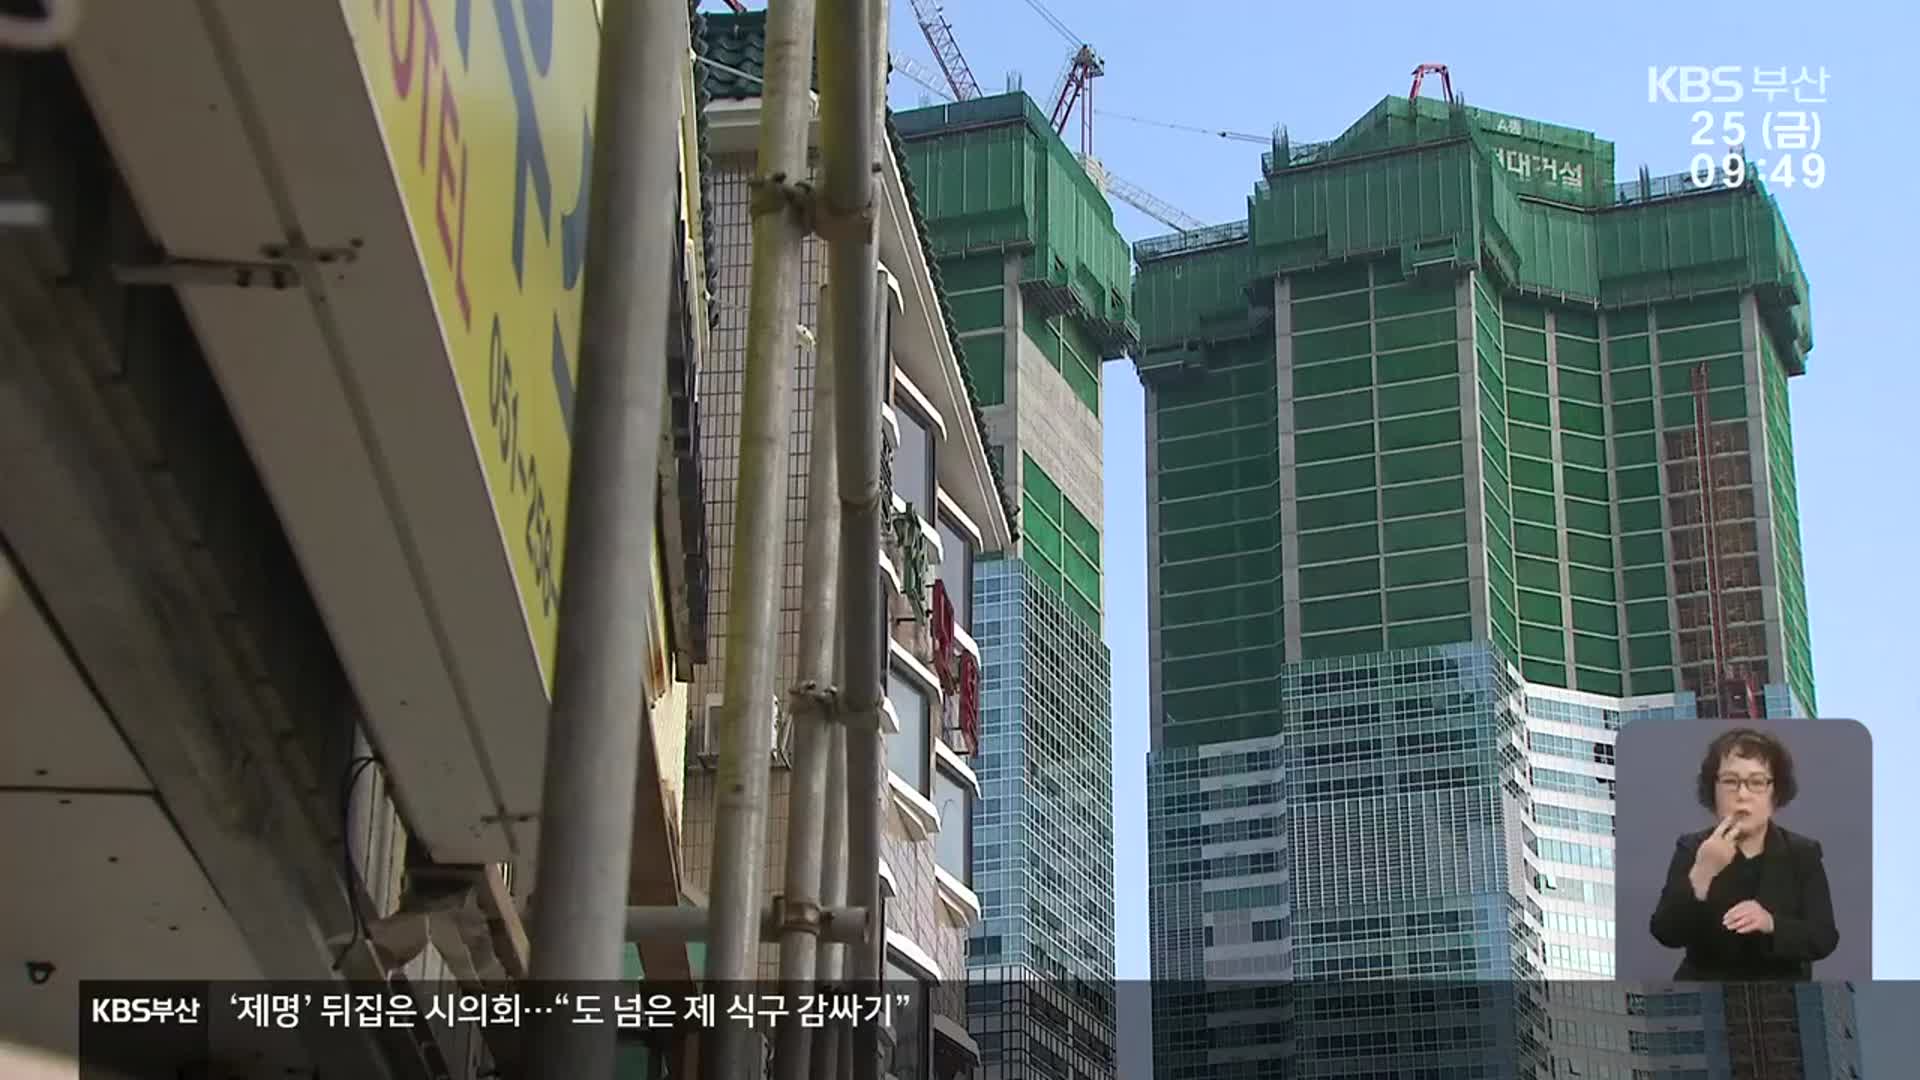 국회의원 가족 건설사 또 난개발?…특혜 우려 